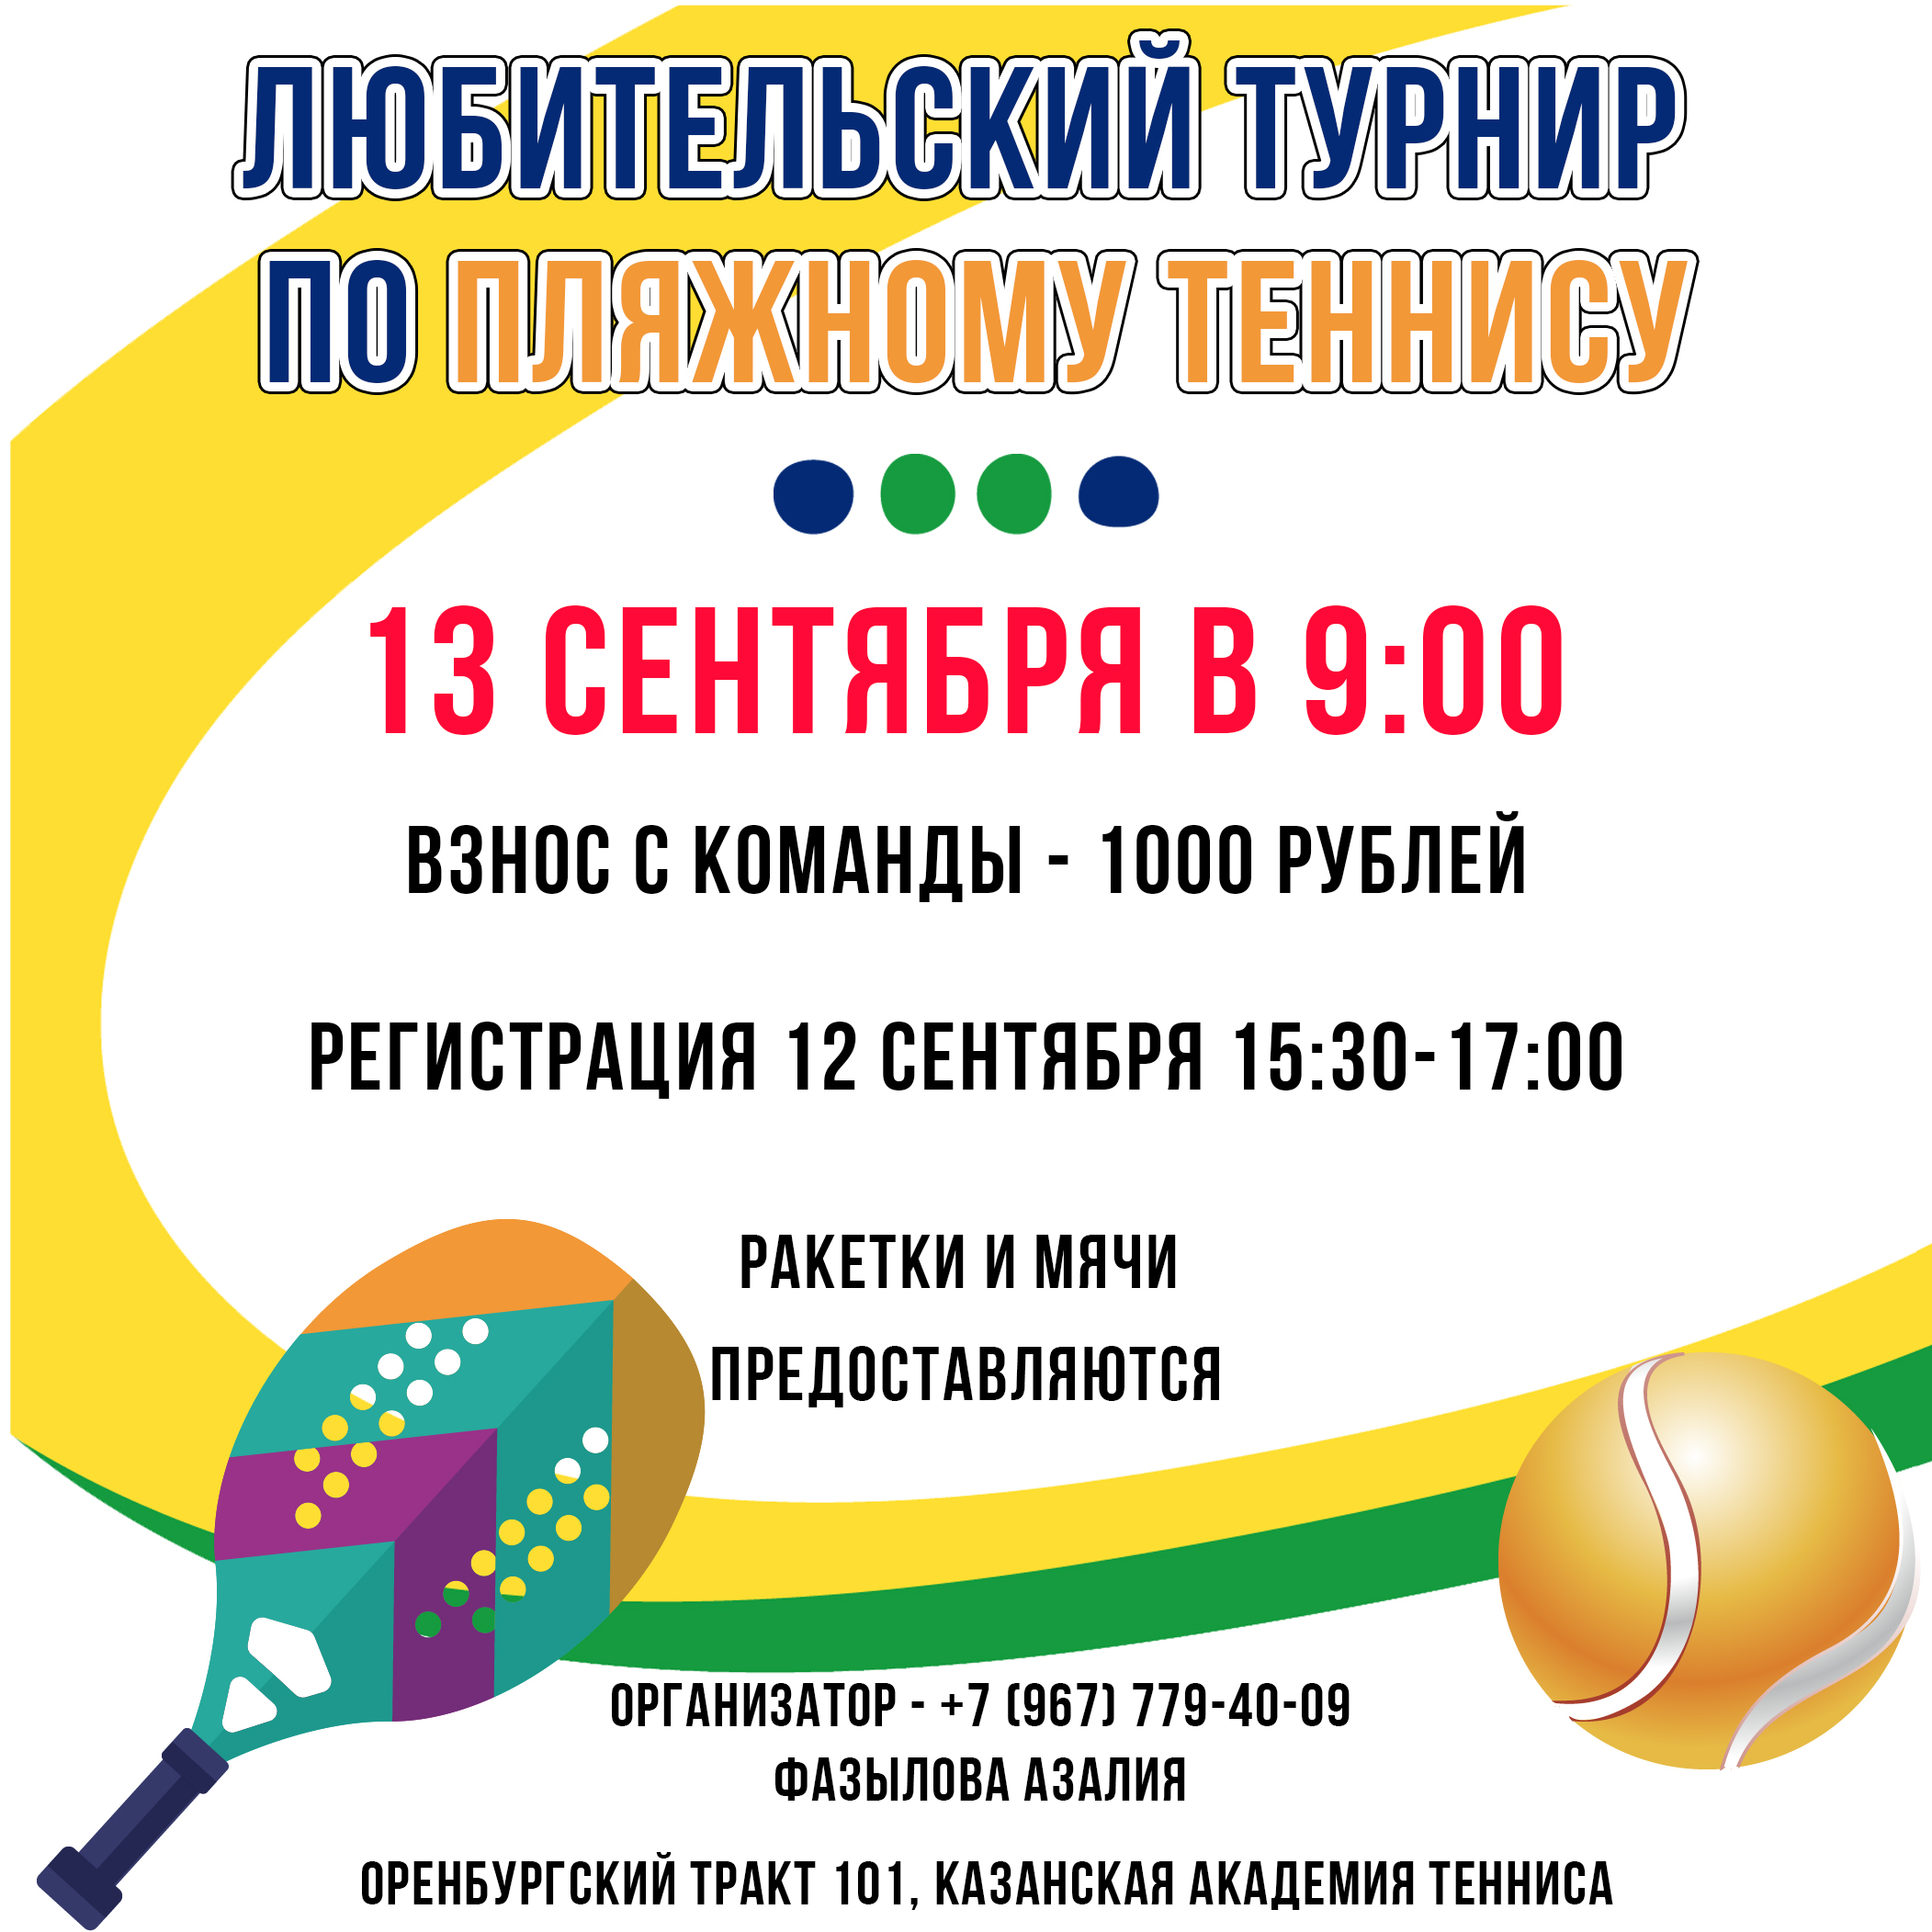 Уважаемые любители пляжного тенниса! 13 сентября состоится любительский турнир